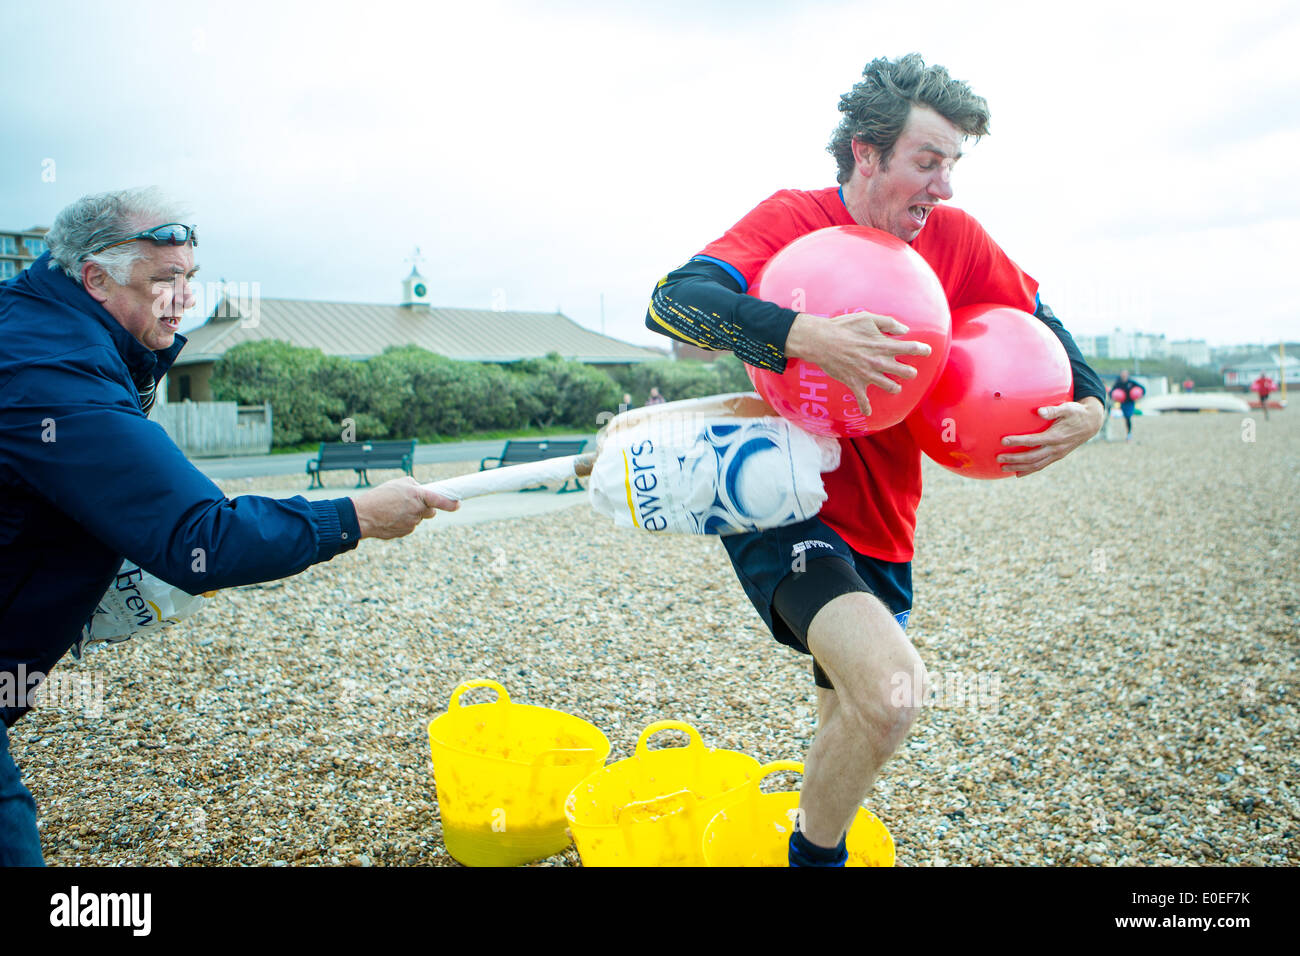 Hove Lagoon, City of Brighton & Hove, East Sussex, Regno Unito. Brighton Big Balls Beach Run 2014. Si tratta di un evento di beneficenza che raccoglie fondi per la ricerca sul cancro alla prostata e ai testicoli. David Smith/Alamy Live News Foto Stock